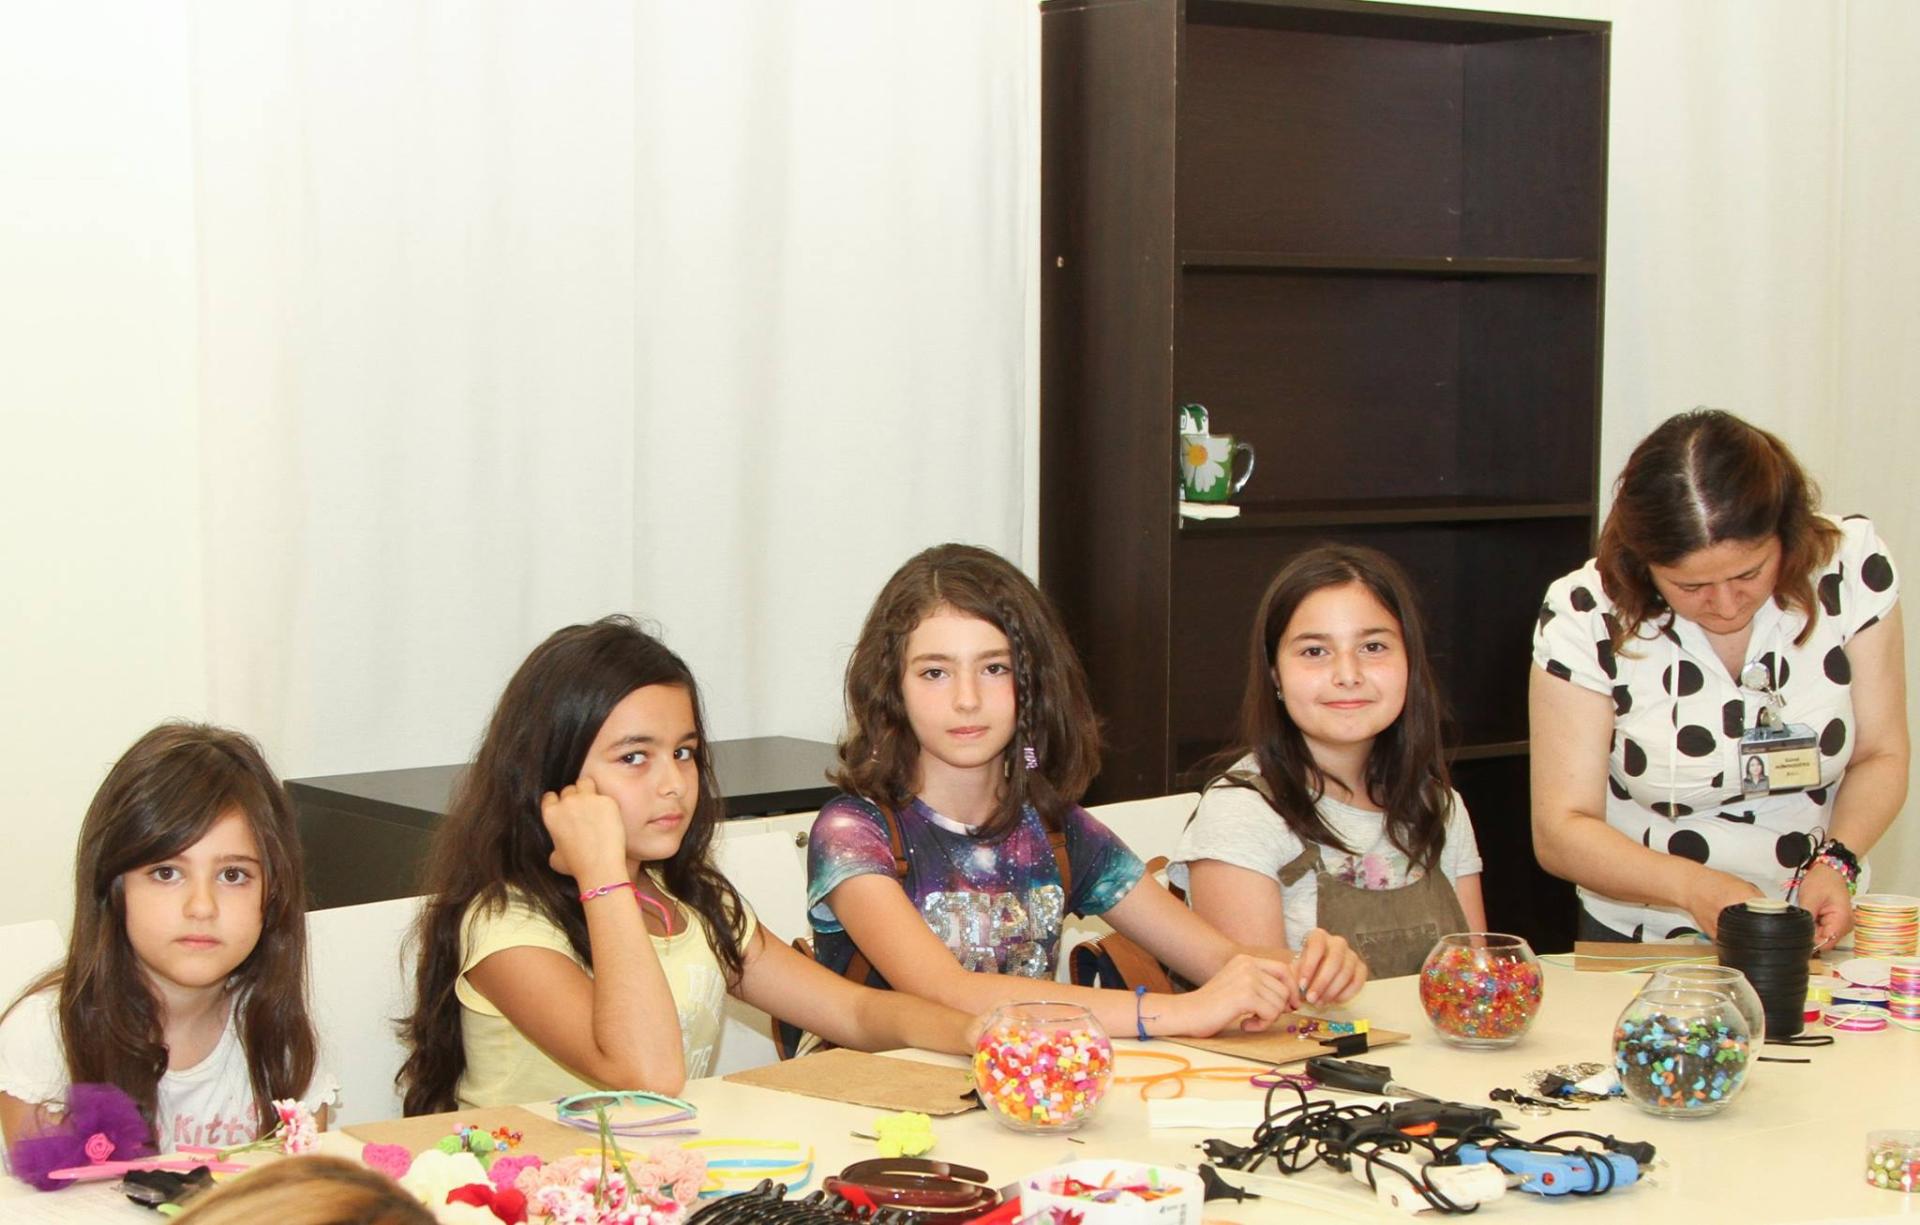 Азербайджанские ковры, или День семьи в Баку (ФОТО)